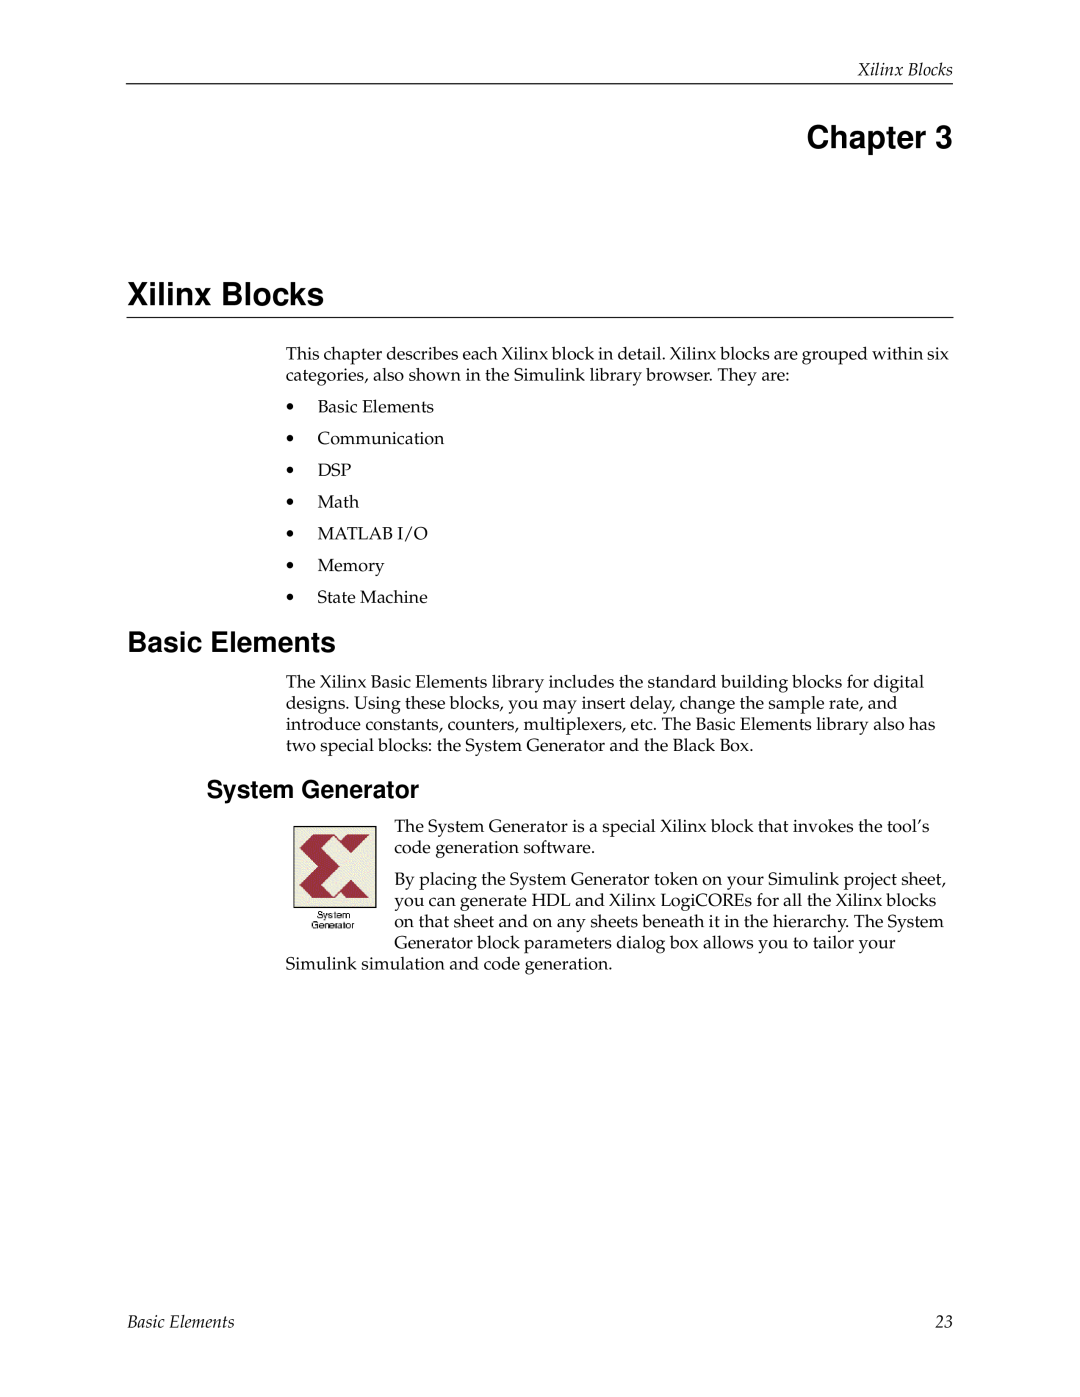 Xilinx V2.1 manual Chapter Xilinx Blocks, Basic Elements, System Generator 